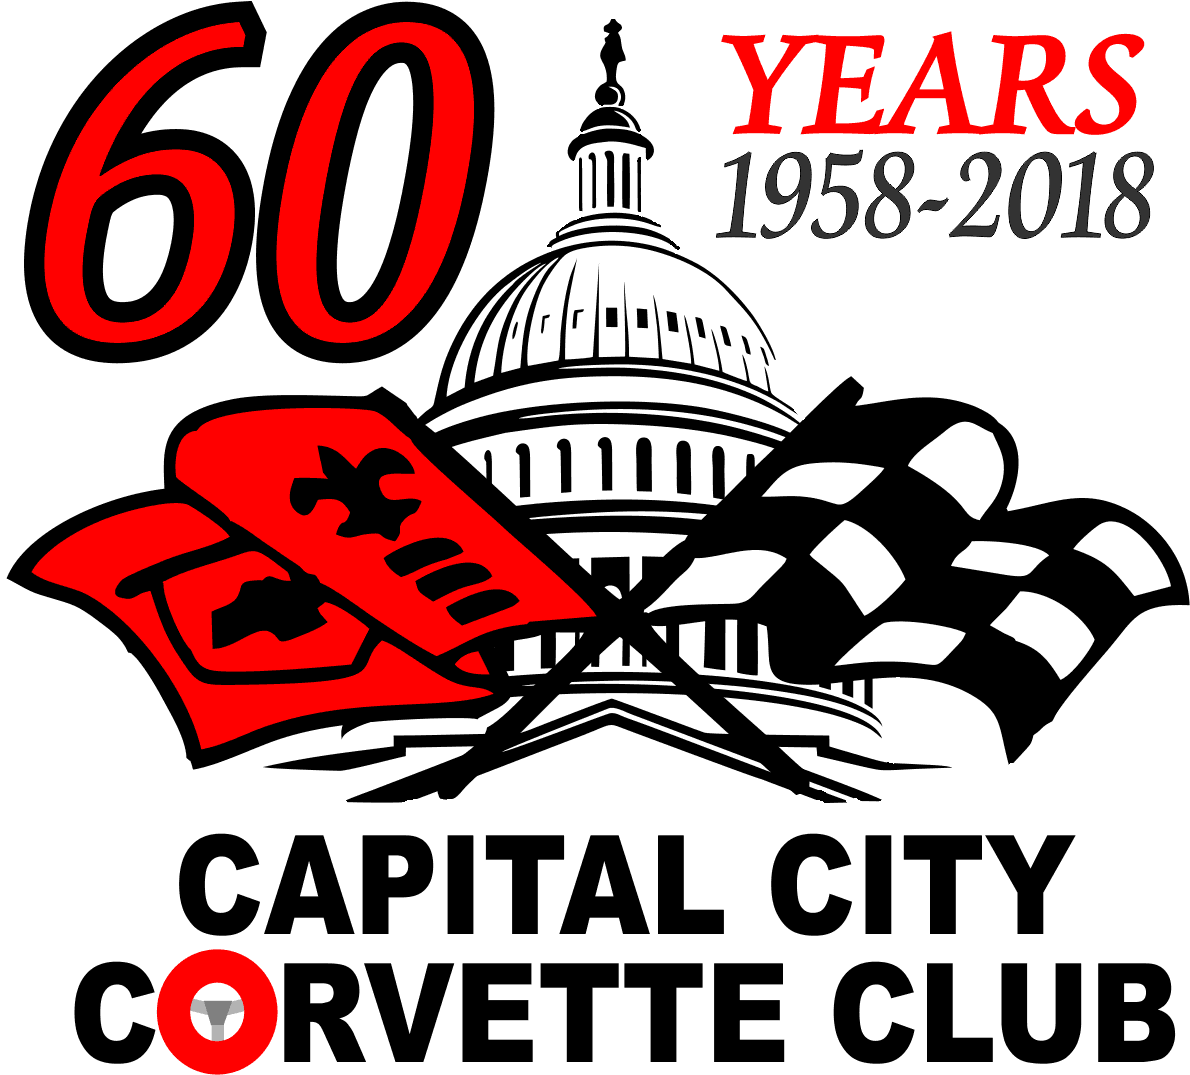 Celebrating 60 Years ~ 1958 - 2018